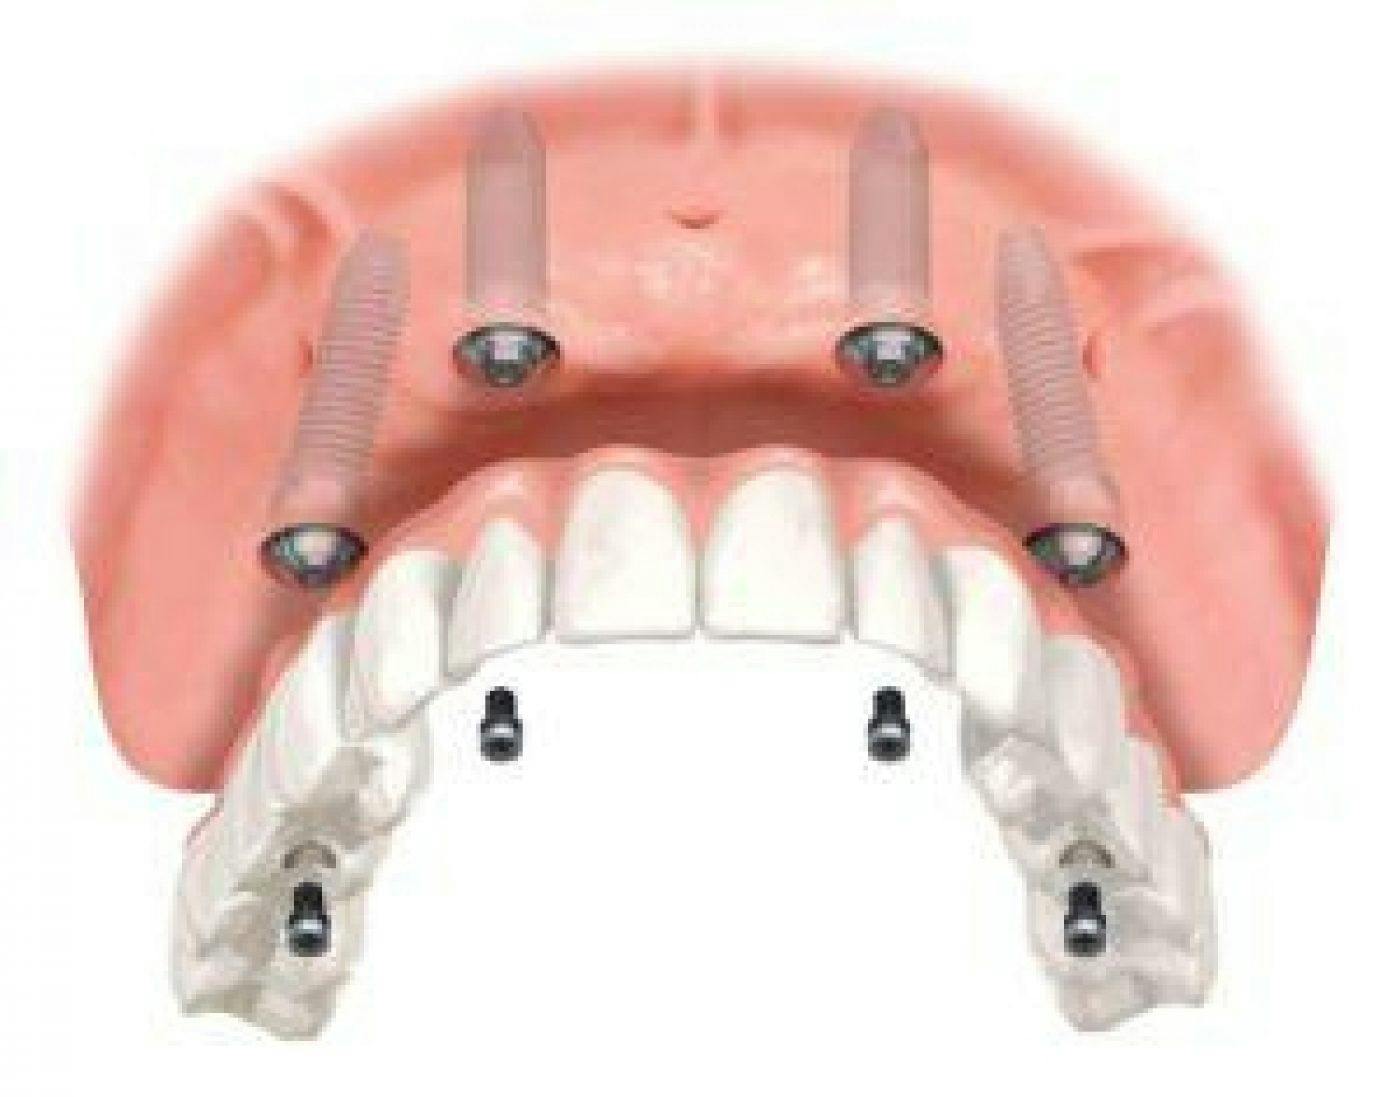 Full Arch Dental Implants 300X235